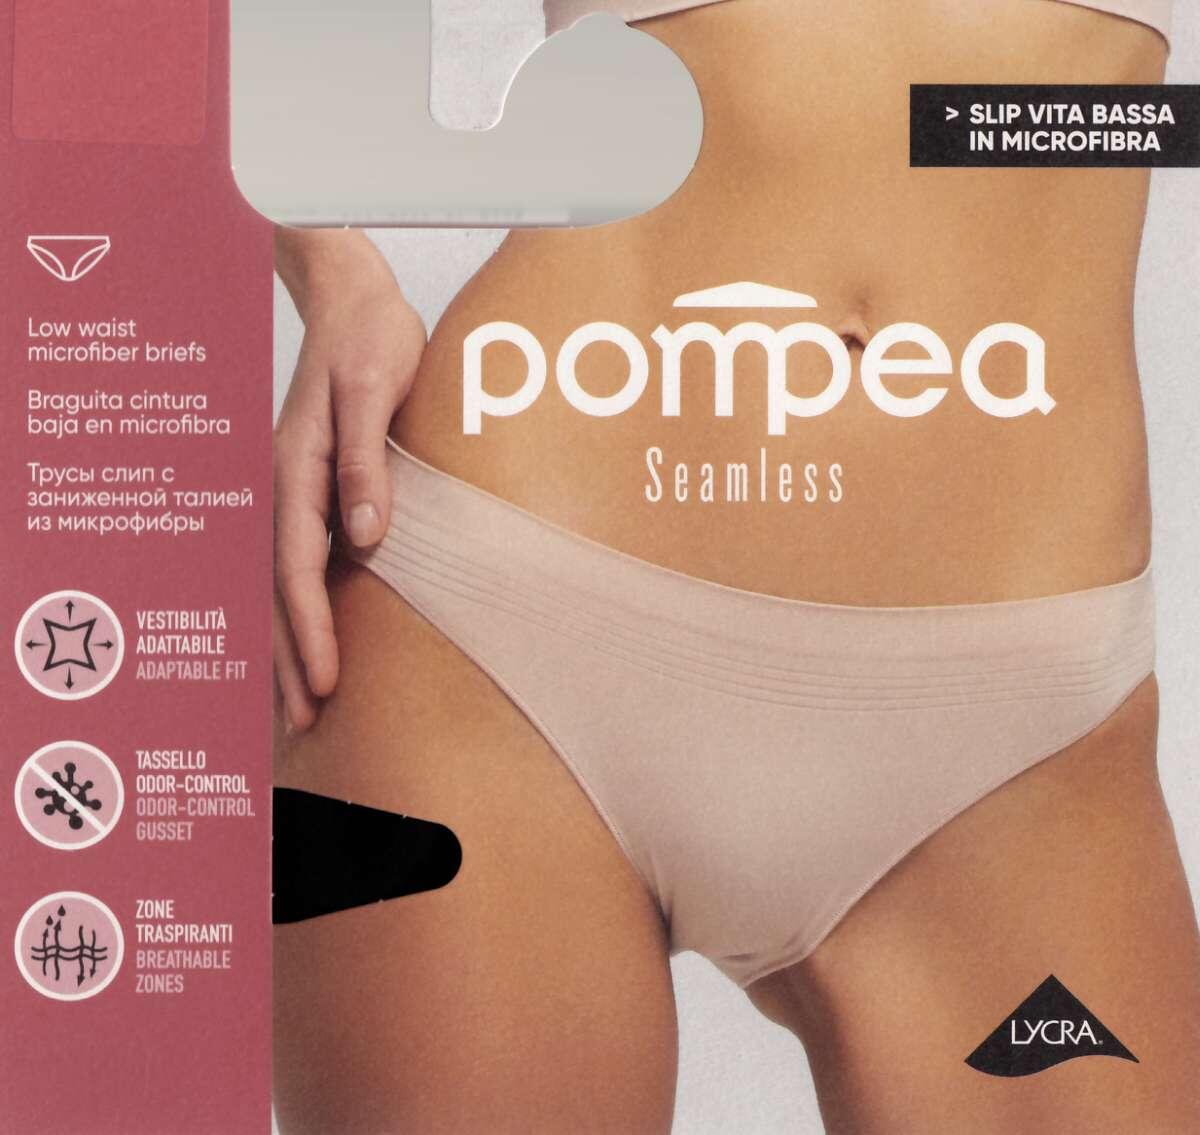 Pompea Seamless microfiber low waist women's briefs art. Briefs VB -  underwear - WOMEN UNDERWEAR